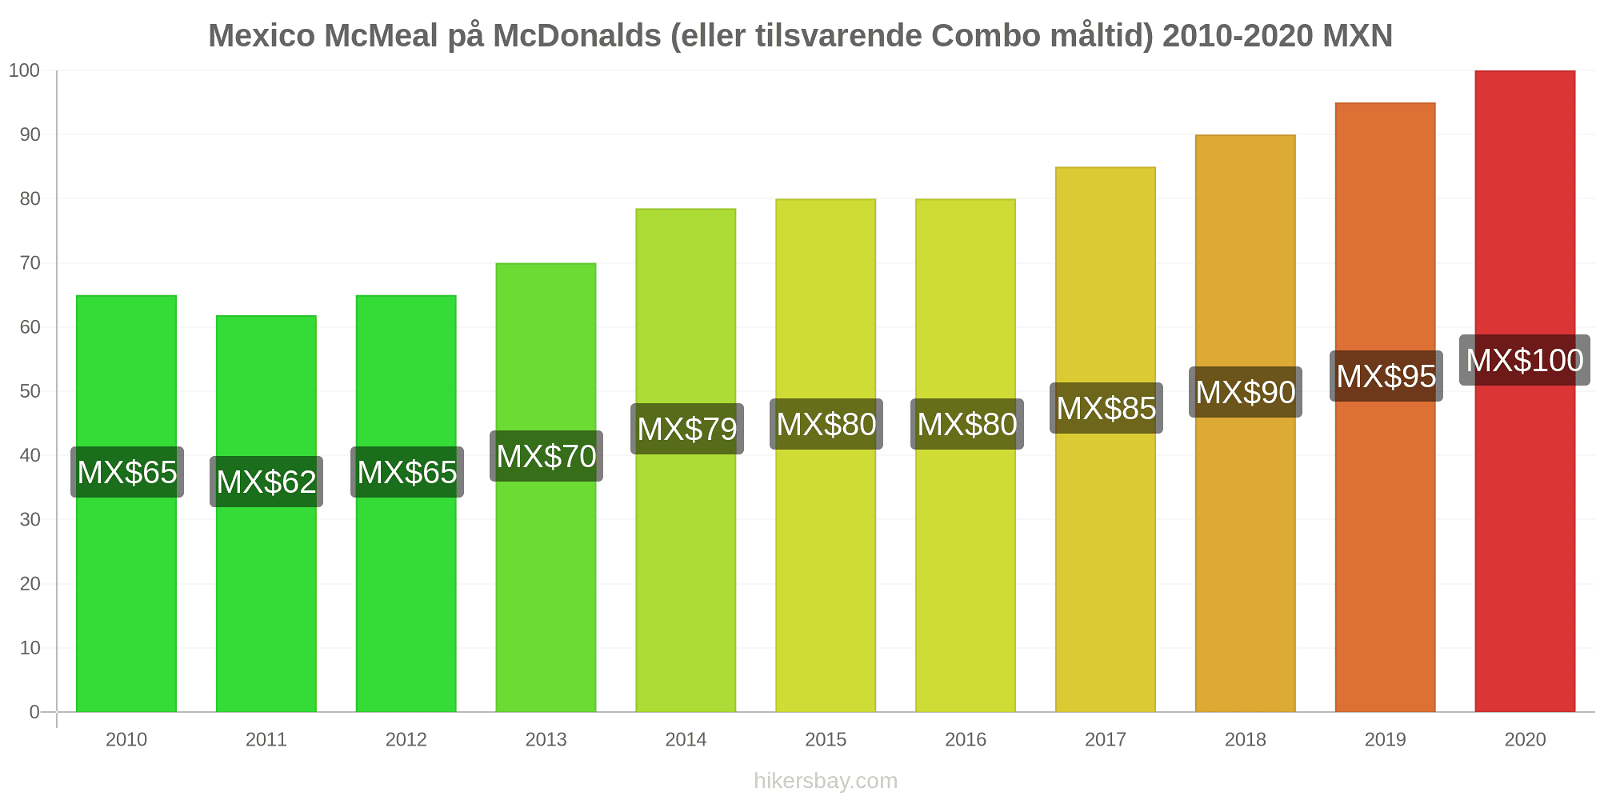 Mexico prisændringer McMeal på McDonalds (eller tilsvarende Combo måltid) hikersbay.com